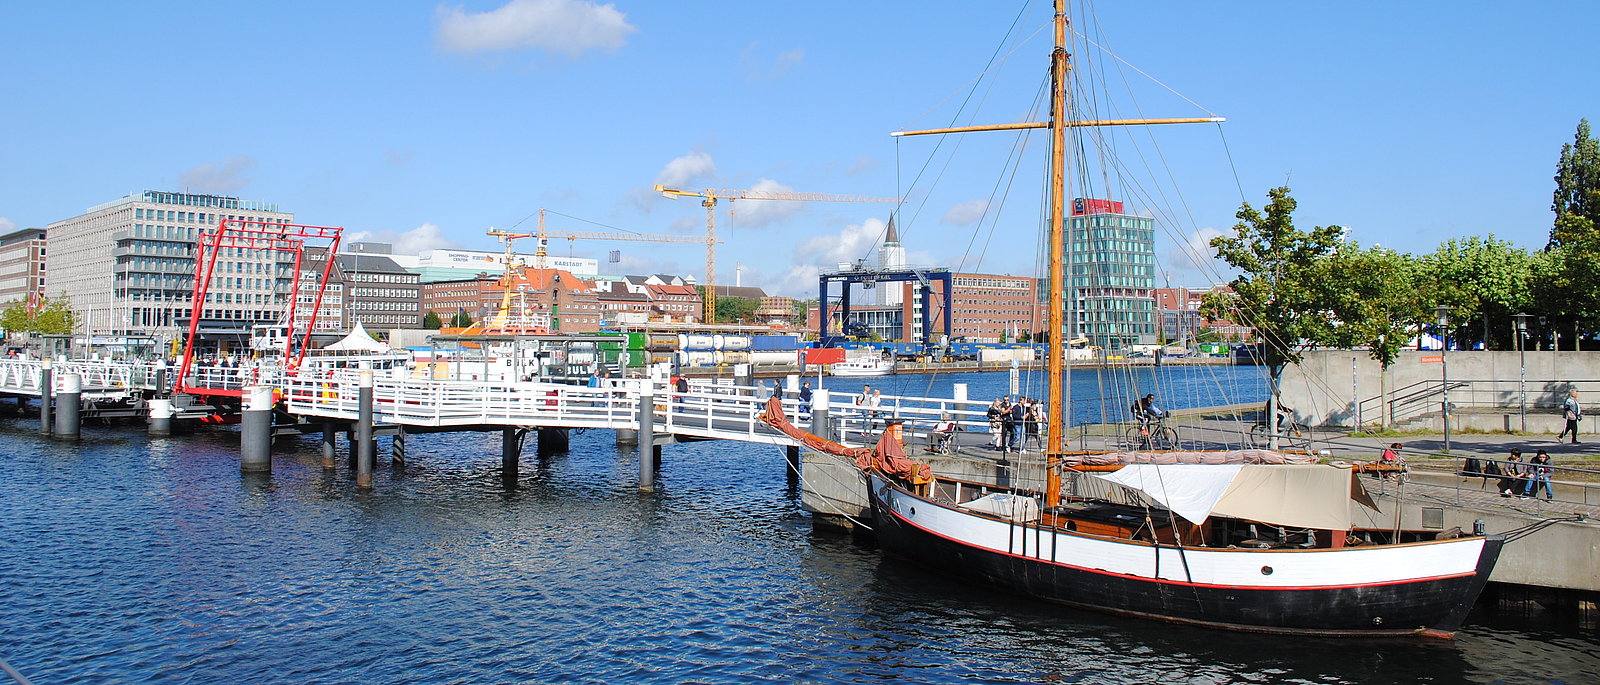 Hafen von Kiel in unserer Projektregion Schleswig-Holstein